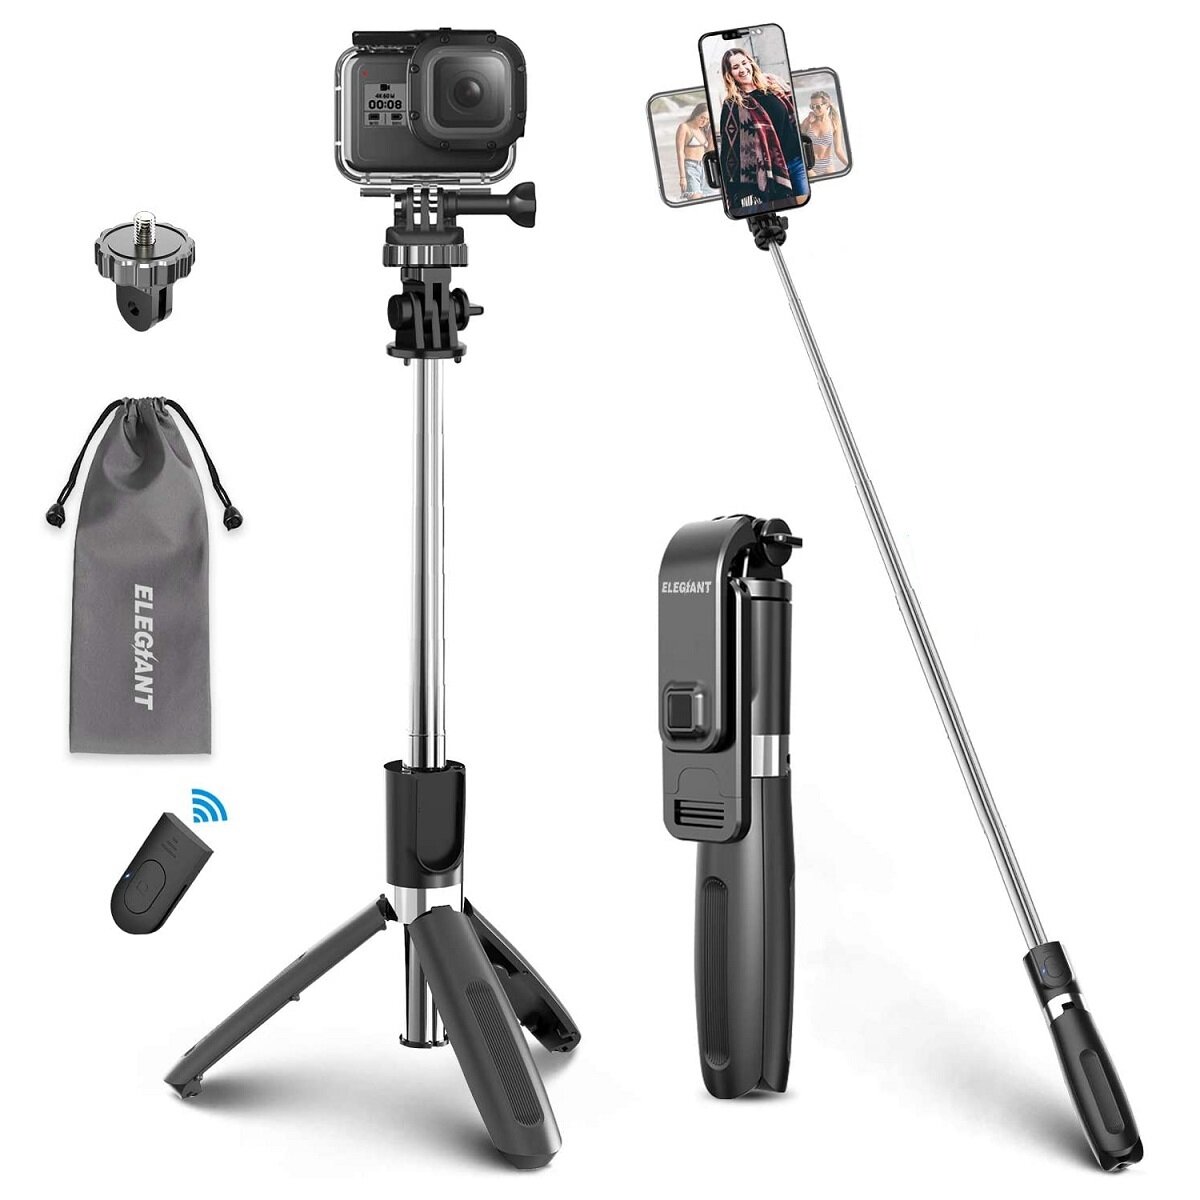 ELEGIANT Bluetooth Selfie-stick-statief Monopod 360 ° rotatie Instelbaar Telescopisch uitschuifbaar met afstandsbediening voor Gopro-actiecamera Sport DSLR-camera voor iPhone Huawei Mobiele telefoon Smartphone